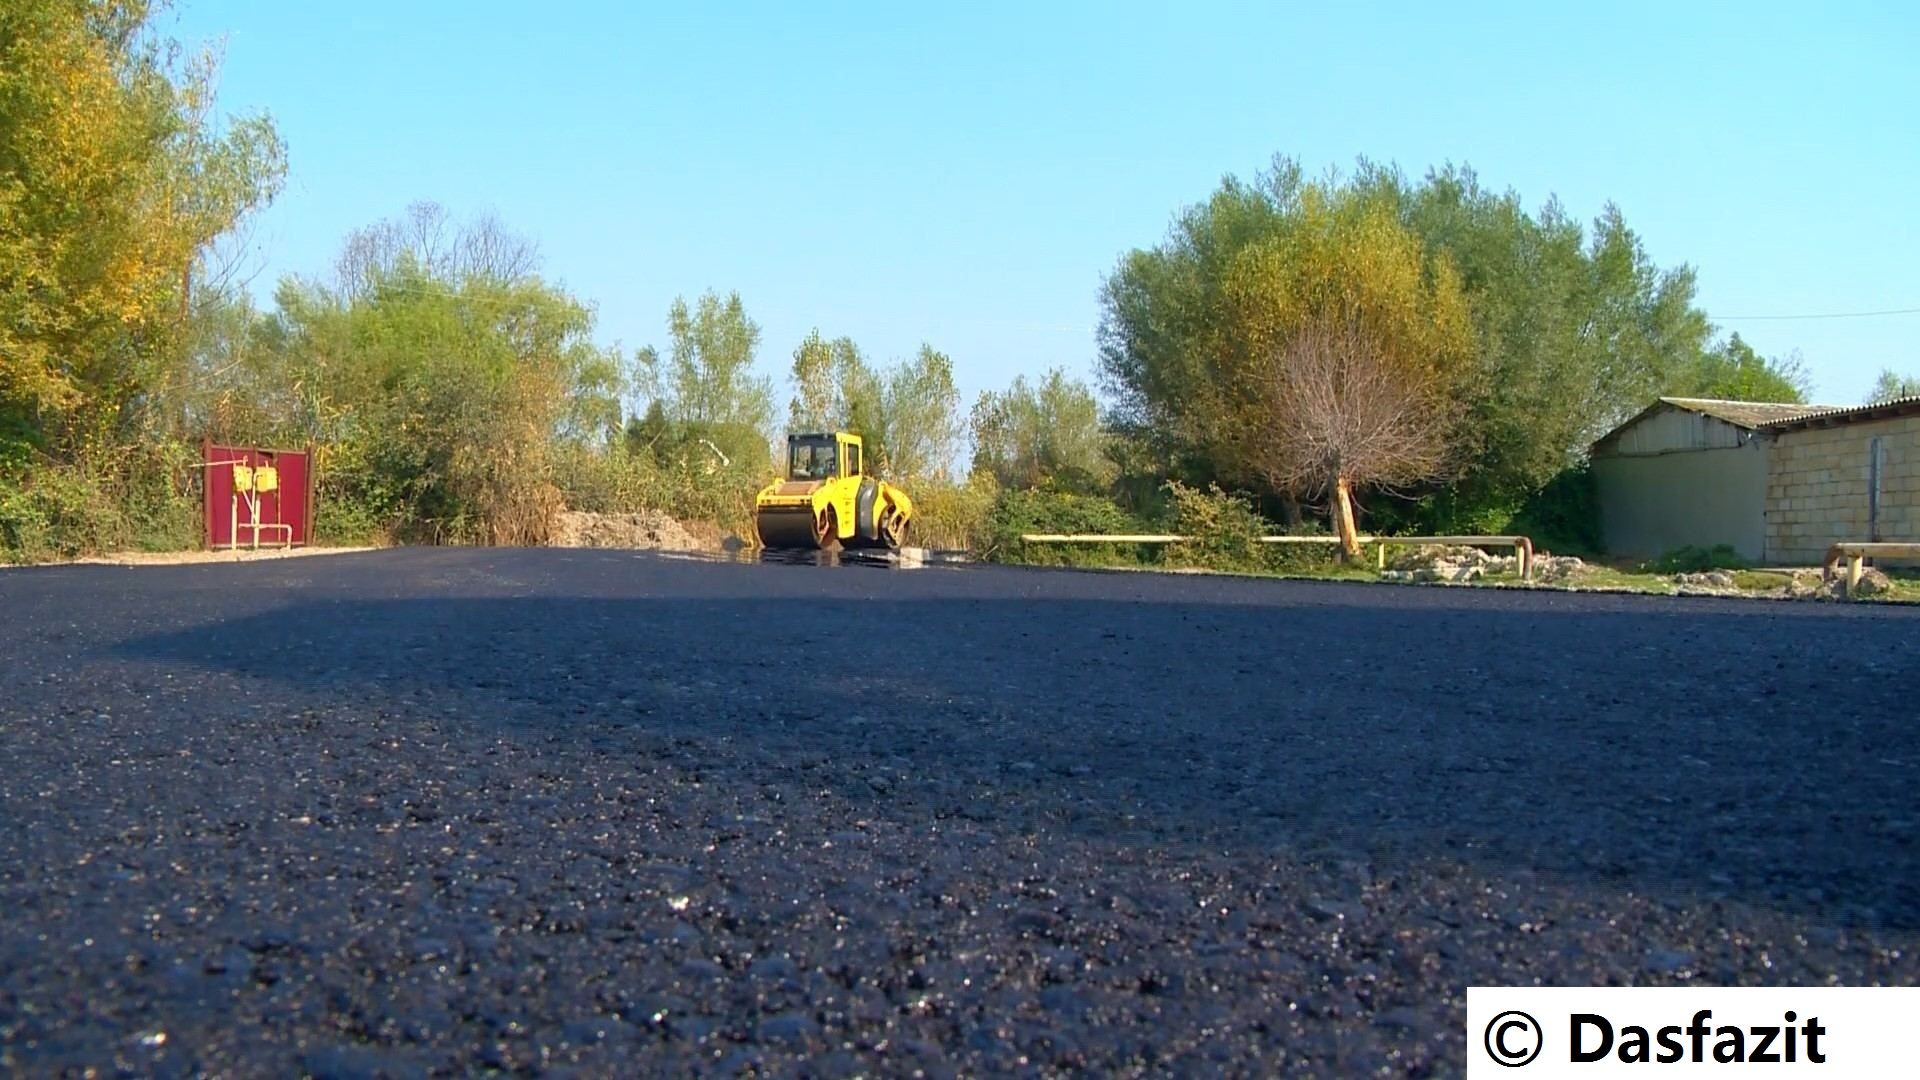 Es ist geplant, eine neue Straße zwischen Usbekistan und Kasachstan zu bauen